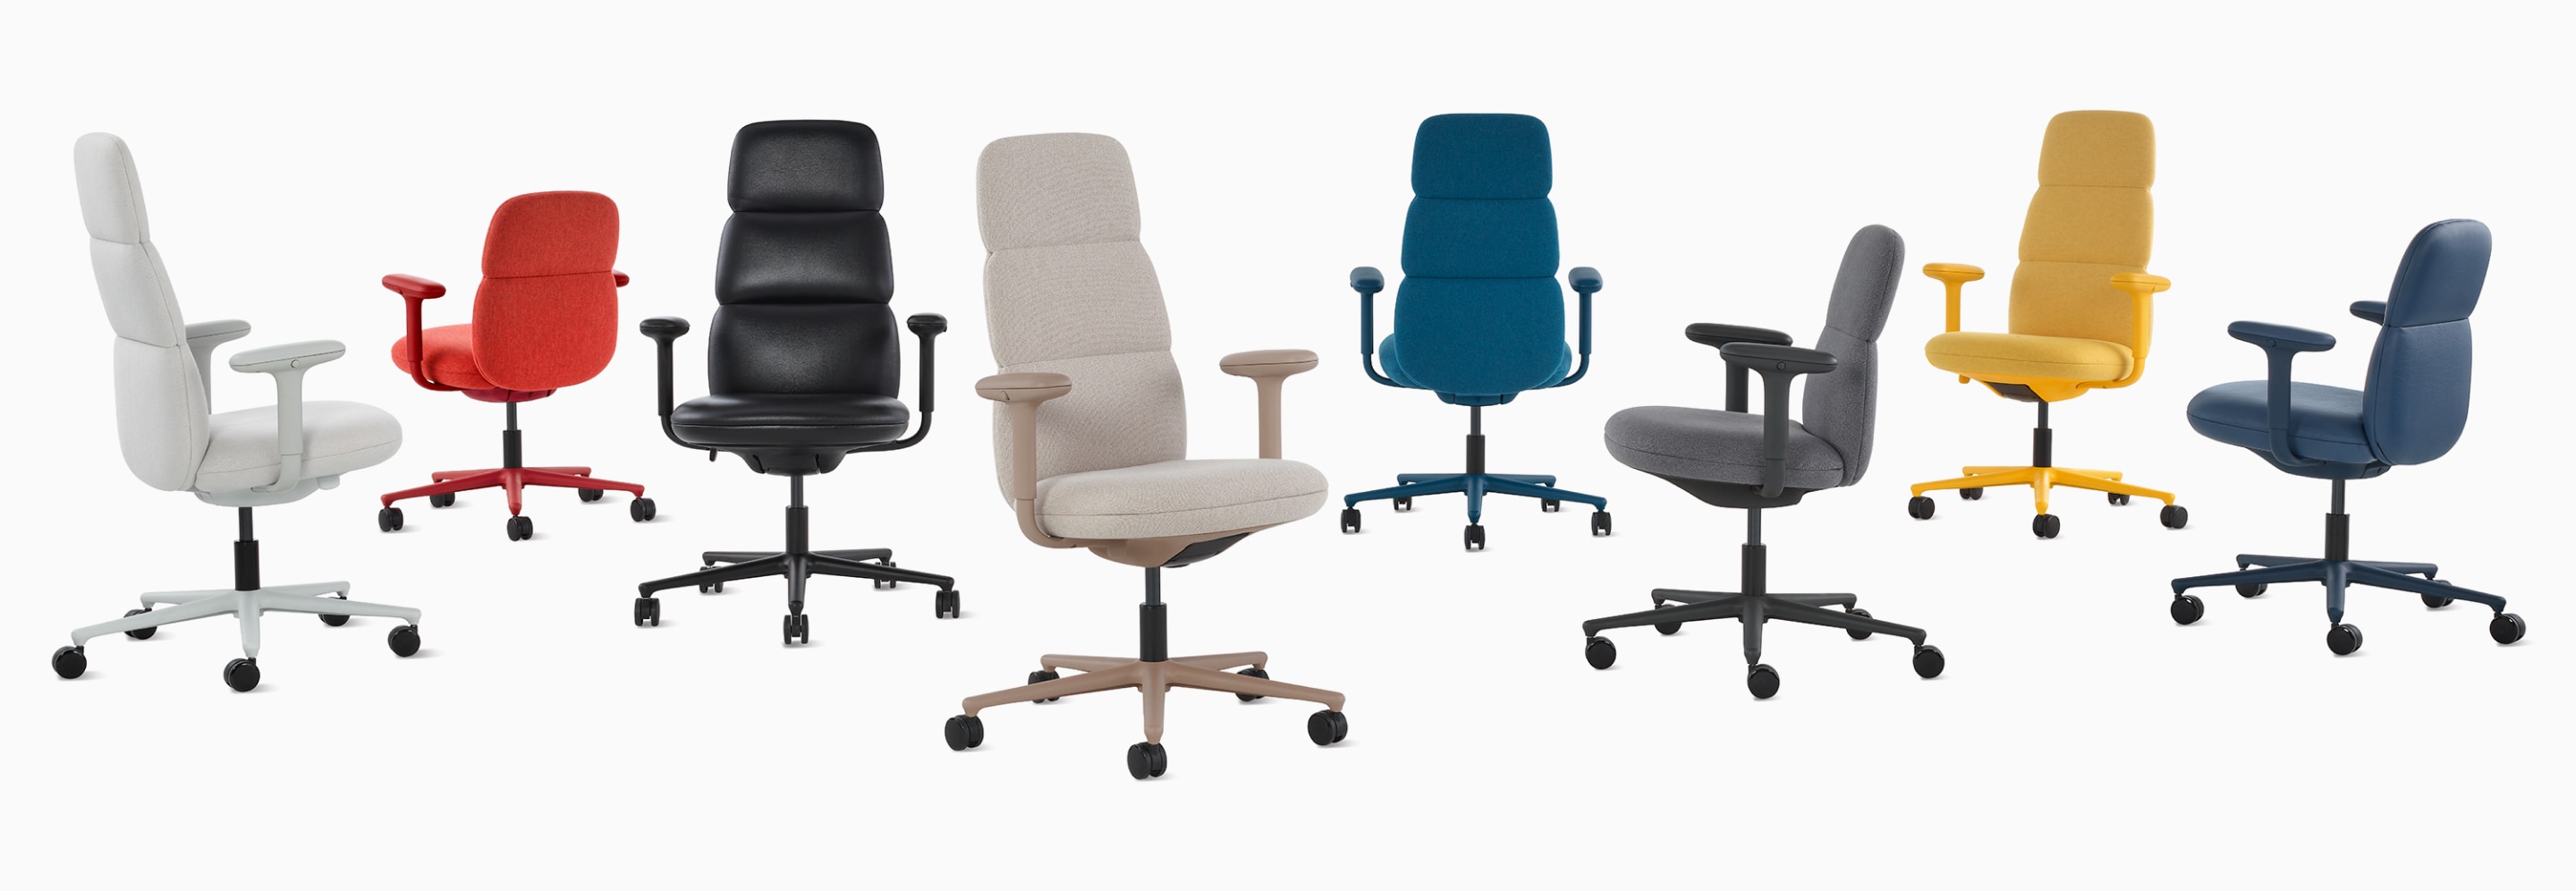 一组八把 Herman Miller 扶手高度可调 Asari 椅子，有各种颜色可选。提供五种高靠背椅和三种中靠背椅。